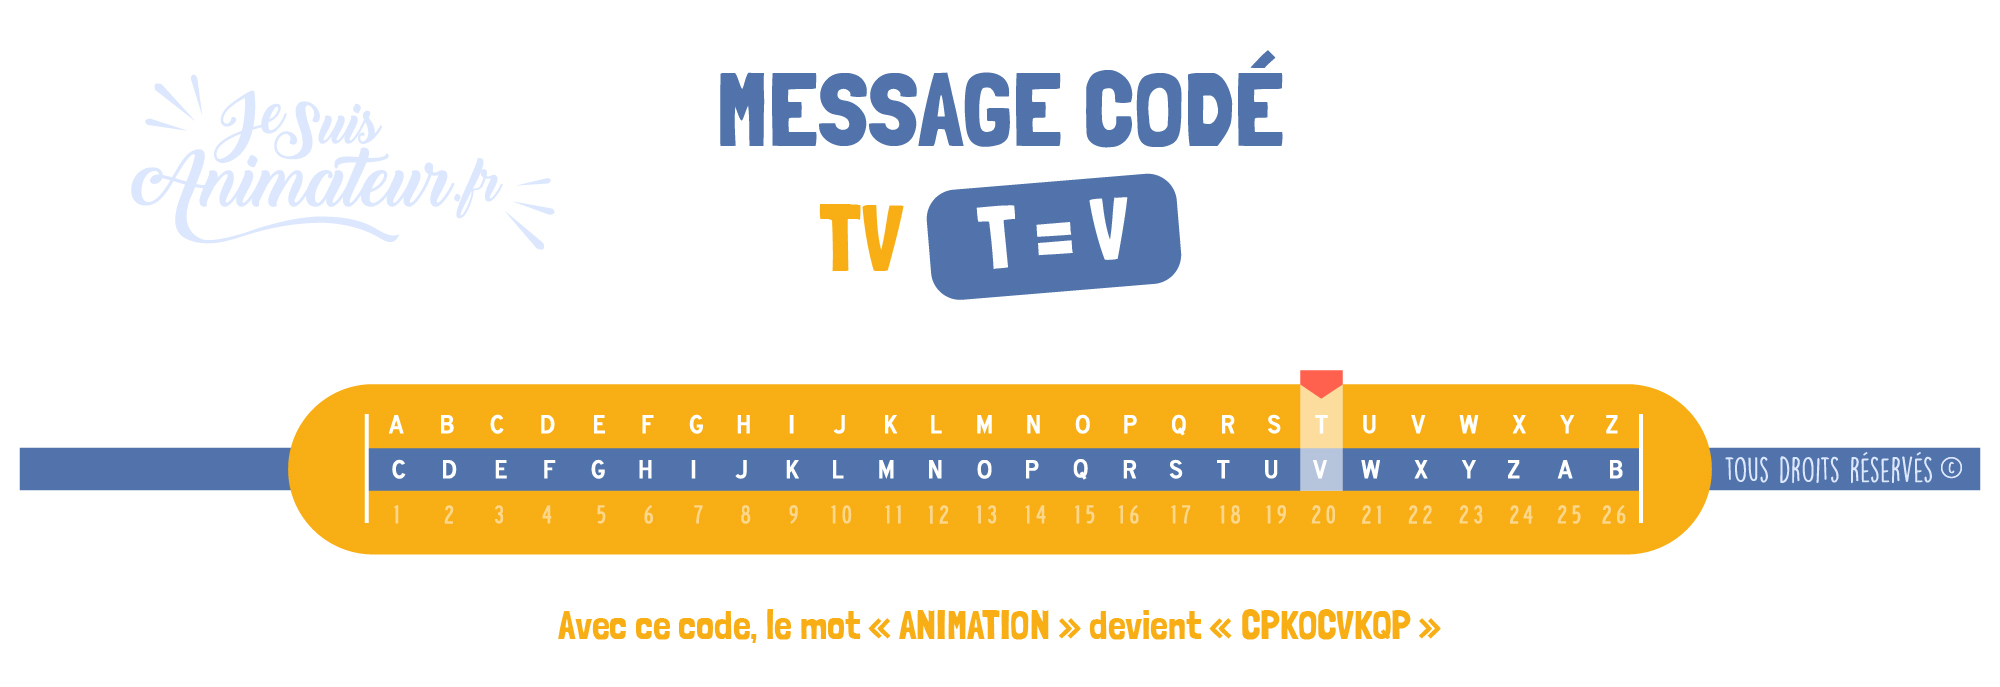 Message codé « TV » (T = V)